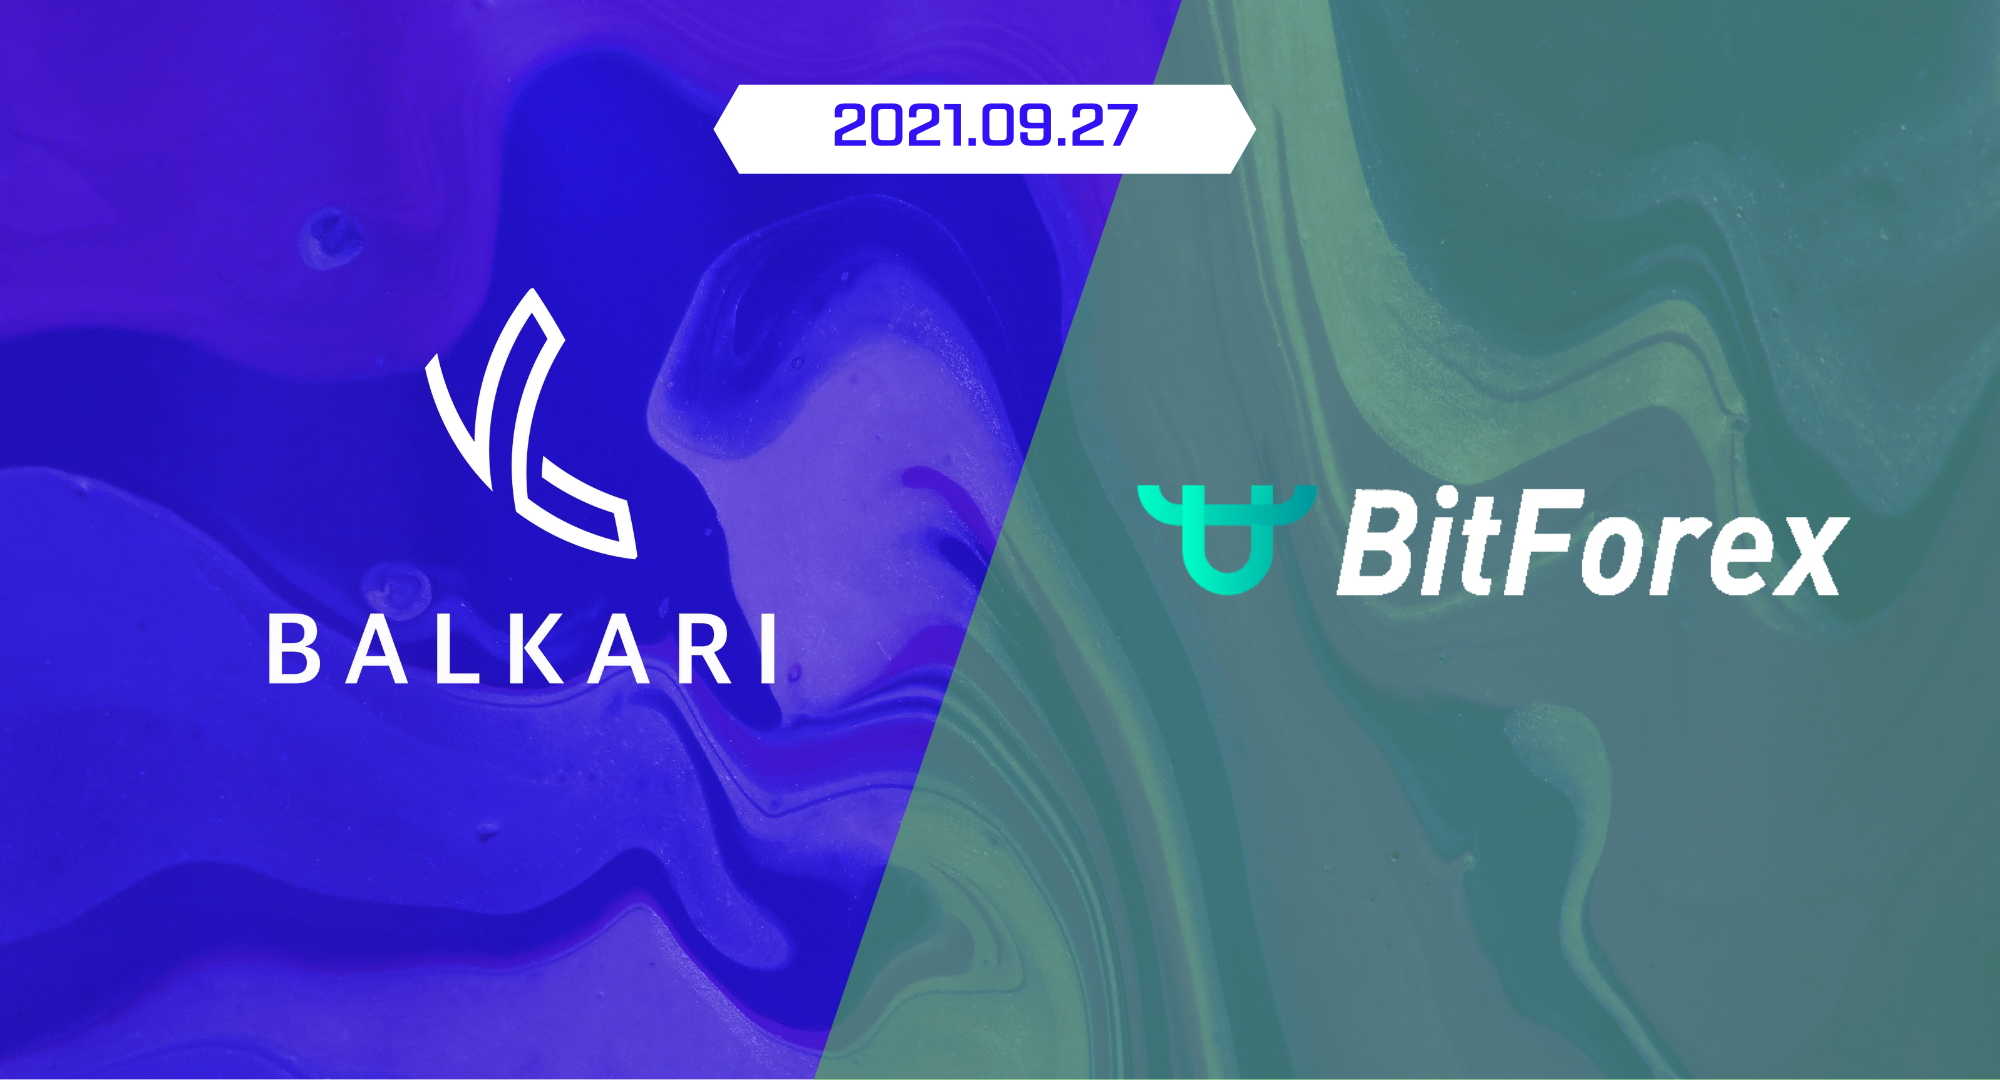 Balkari Announces Listing on Virtual Asset Exchange BitForex